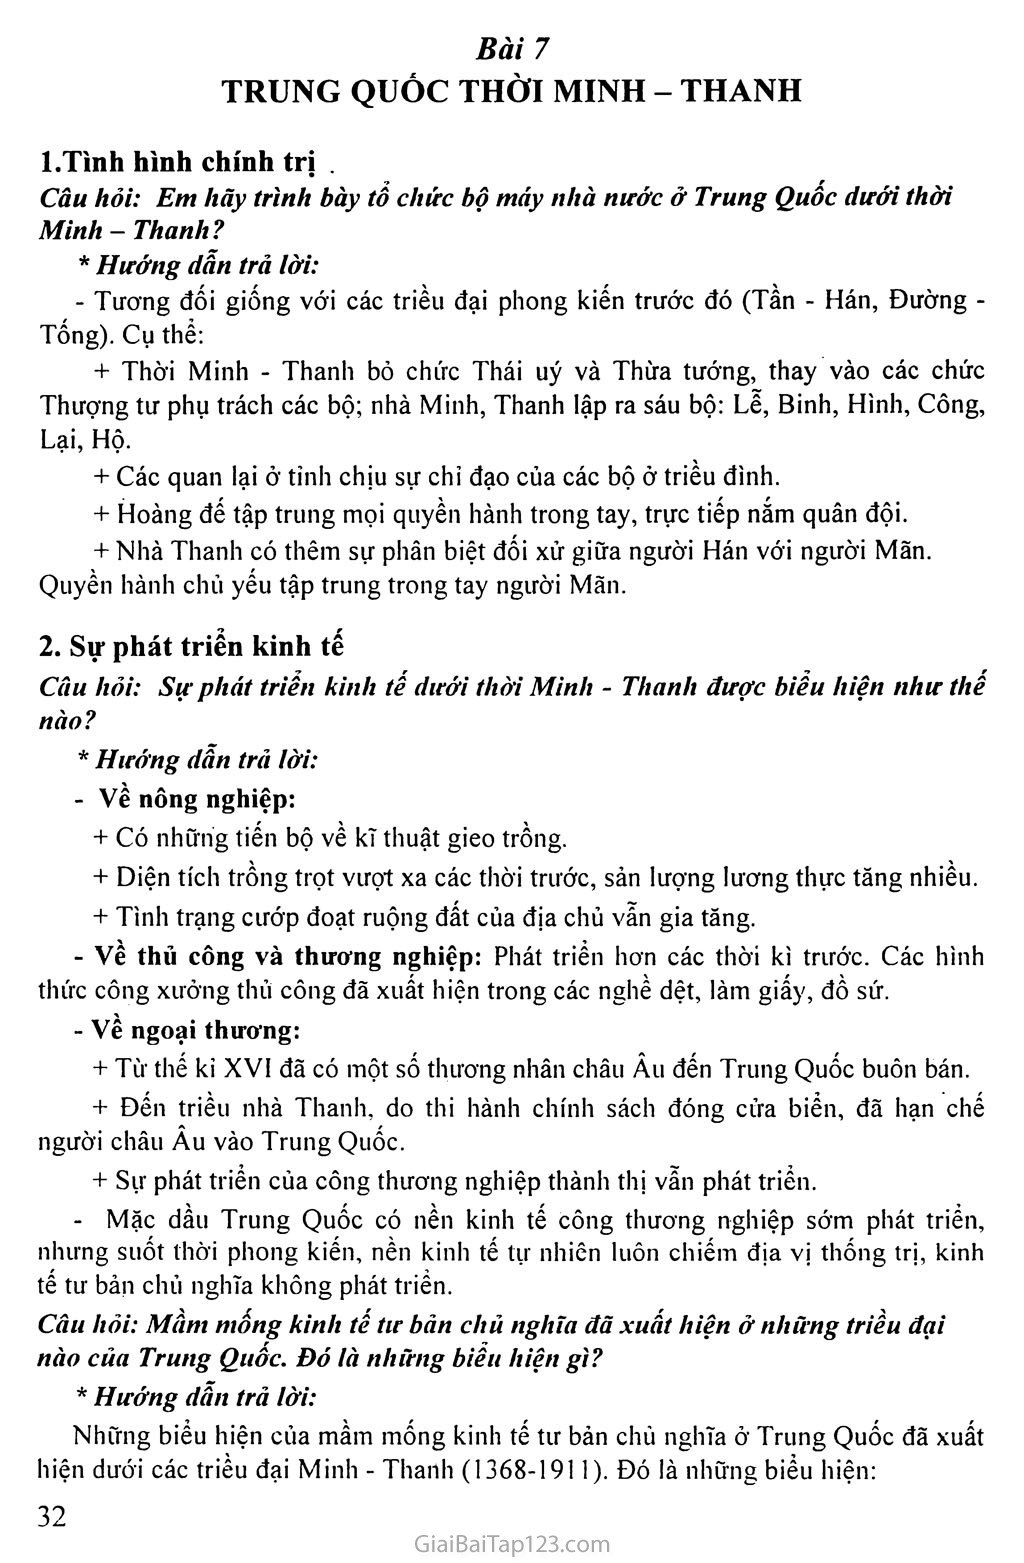 Bài 7: Trung Quốc thời Minh - Thanh trang 1